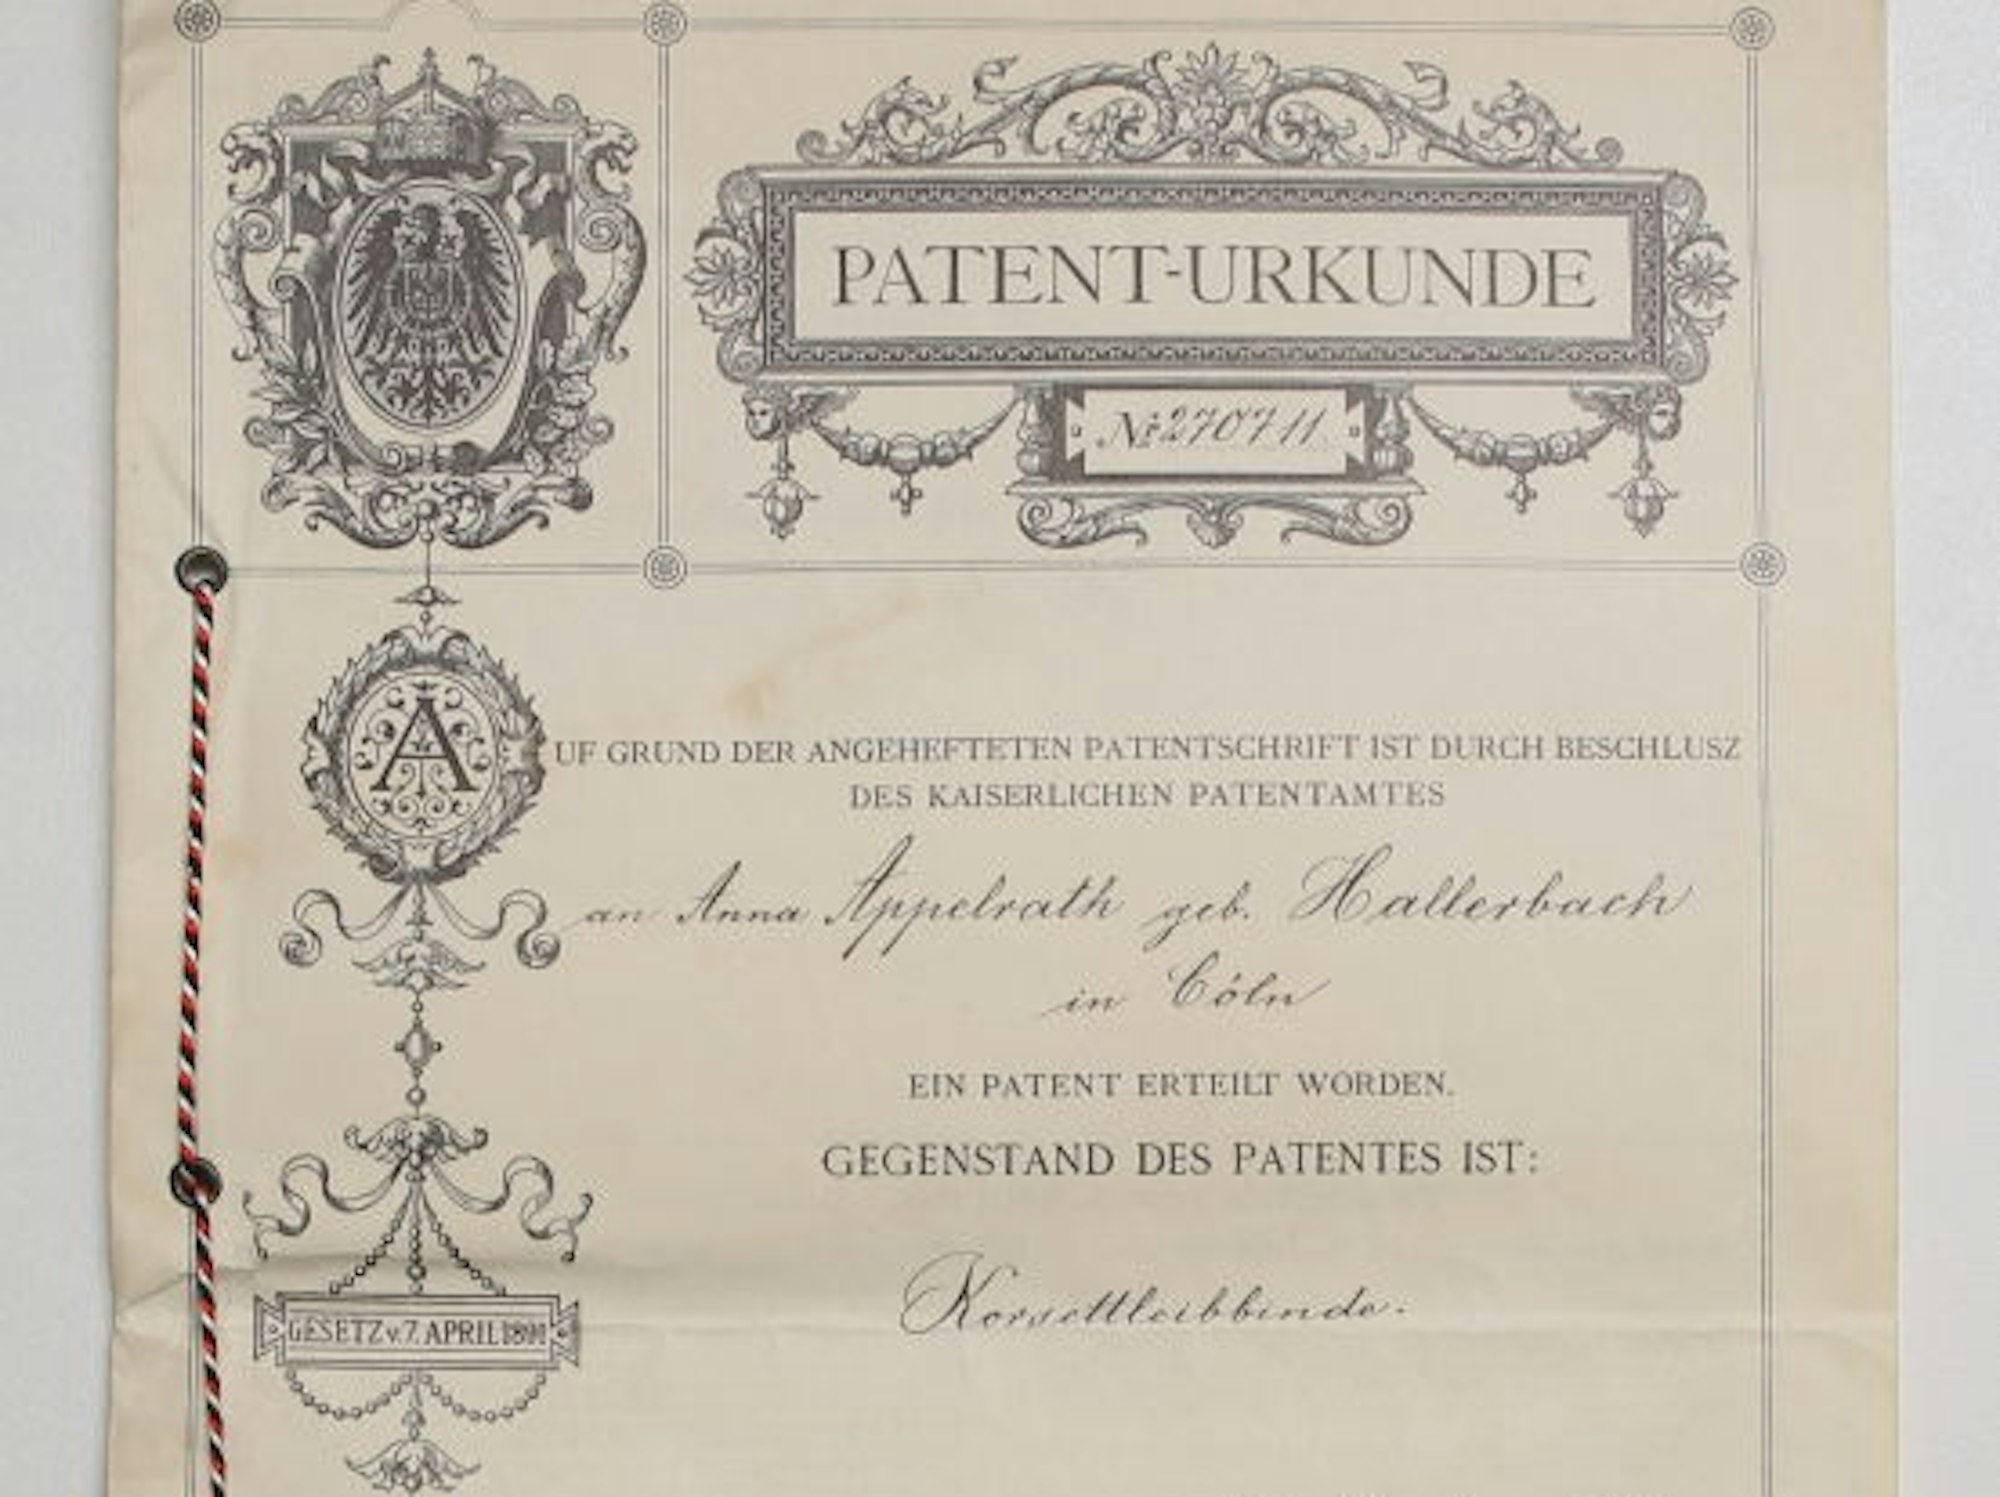 Anna Appelrath, Urgroßmutter der heutigen Inhaber, erhielt das Patent über die Korsettleibbinde.